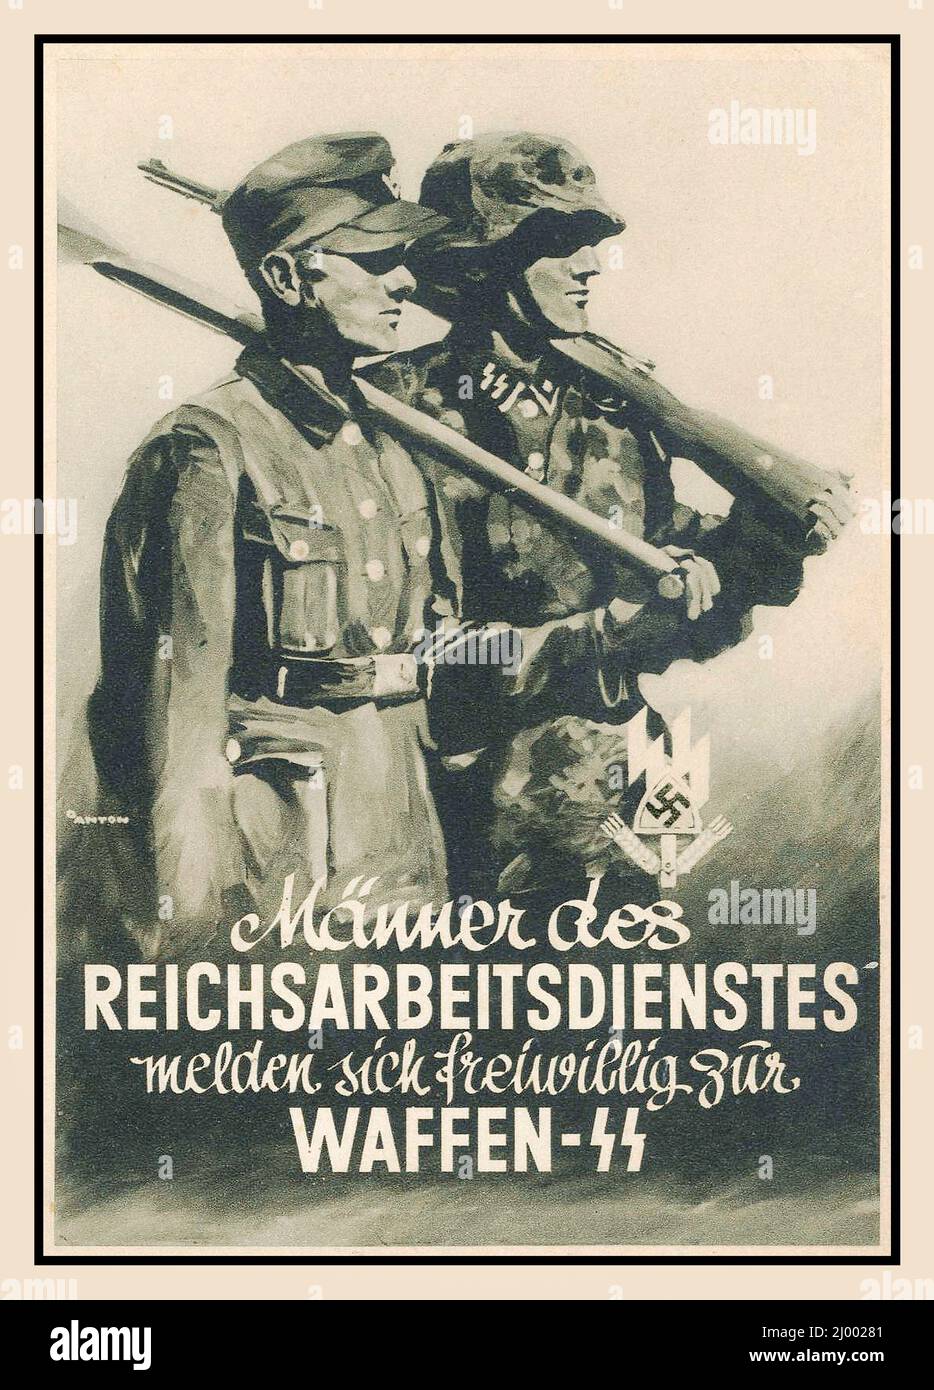 1942 propagande de l'affiche d'époque nazie recrutement des volontaires allemands travaillant volontairement au service du Nazi Waffen SS 1942 MÄNNER DES REICHSABREITSDIENSTES MELDEN SICH FREIWILLIG ZUR WAFFEN-SS Seconde Guerre mondiale WW2 Banque D'Images